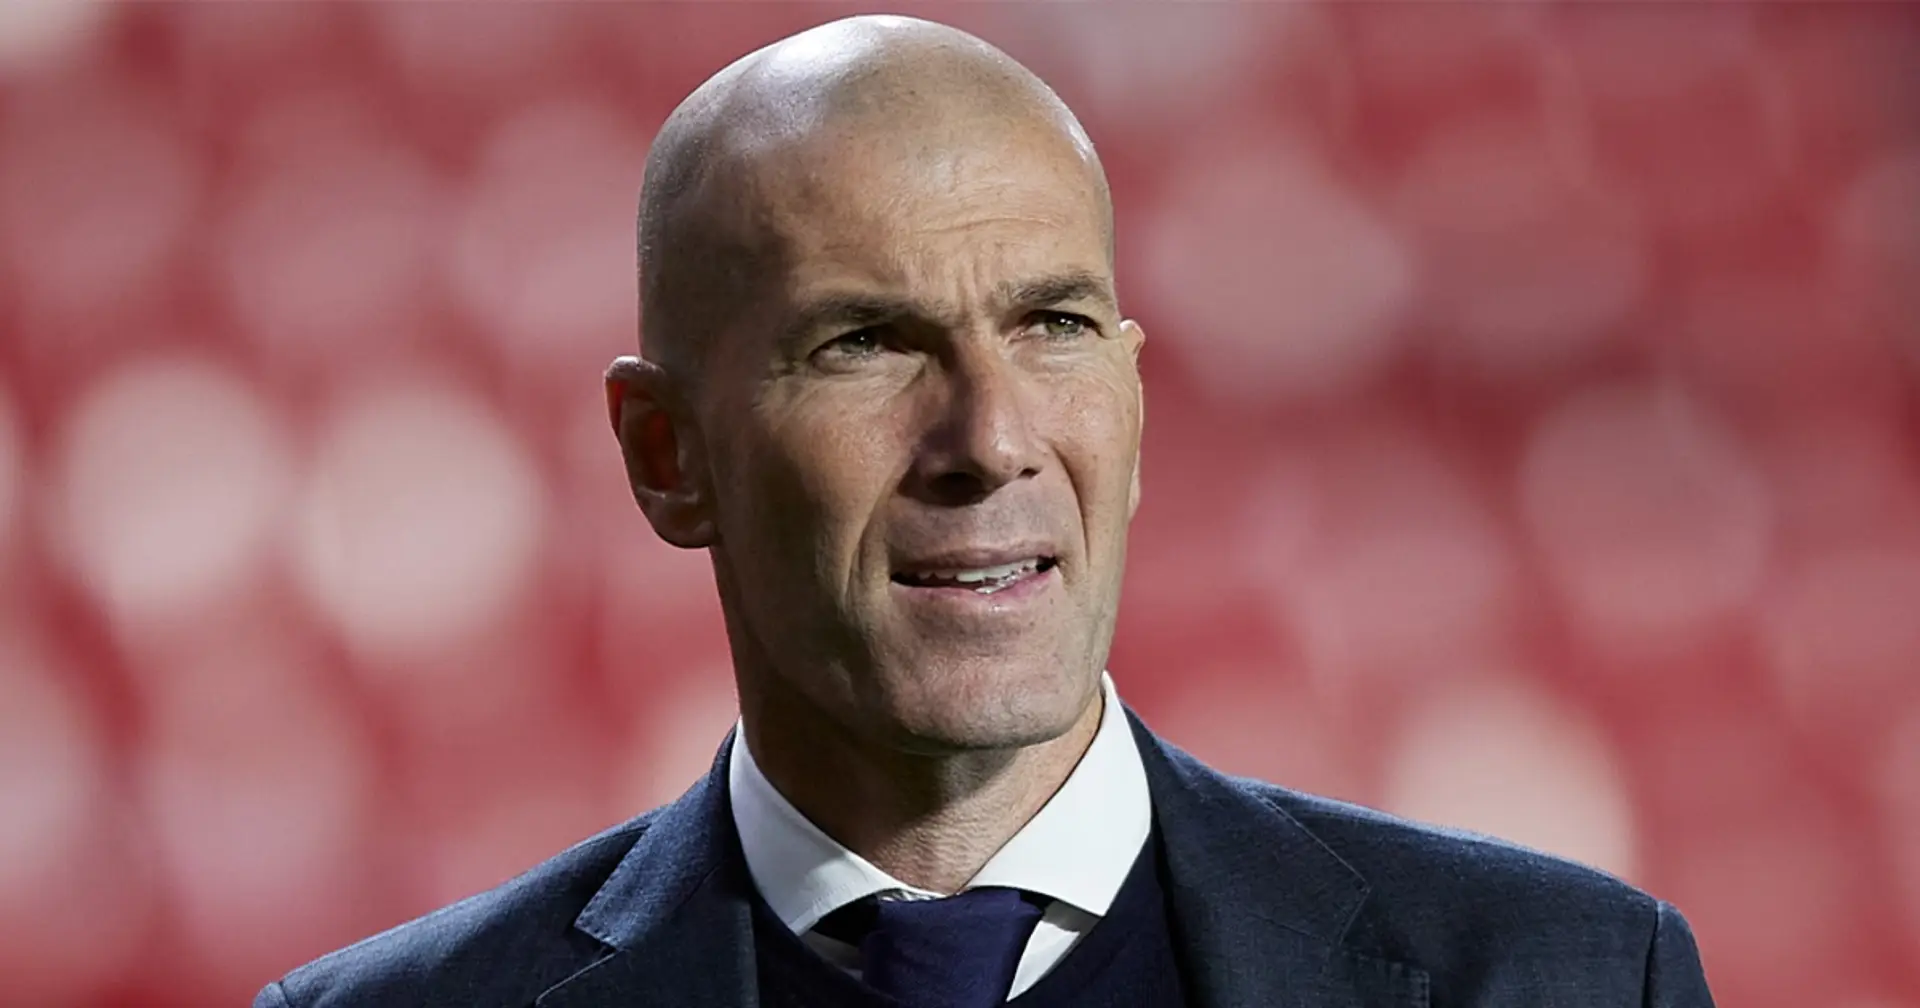 RMC| Zidane vuole tornare ad allenare! Un club su tutti 'stuzzica' gli interessi dell'ex Juventus